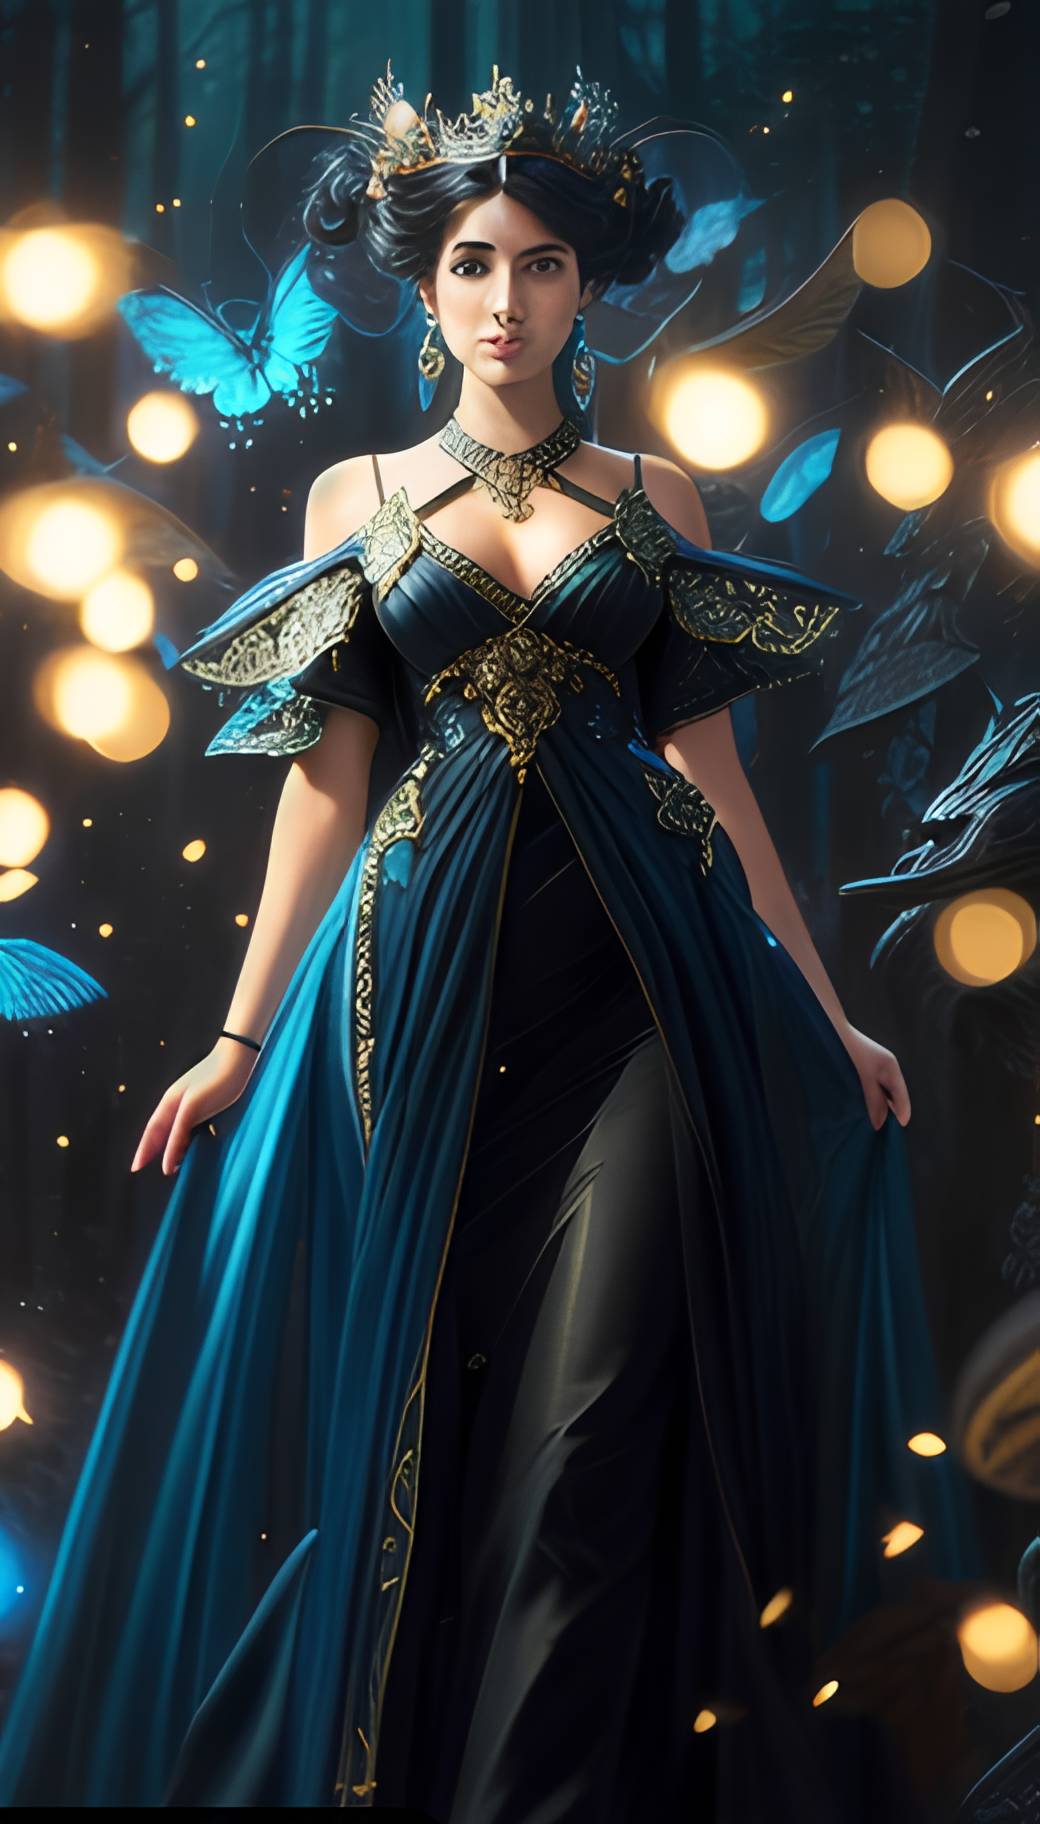 Royal Fantasy dress 2 by Diva161 on DeviantArt